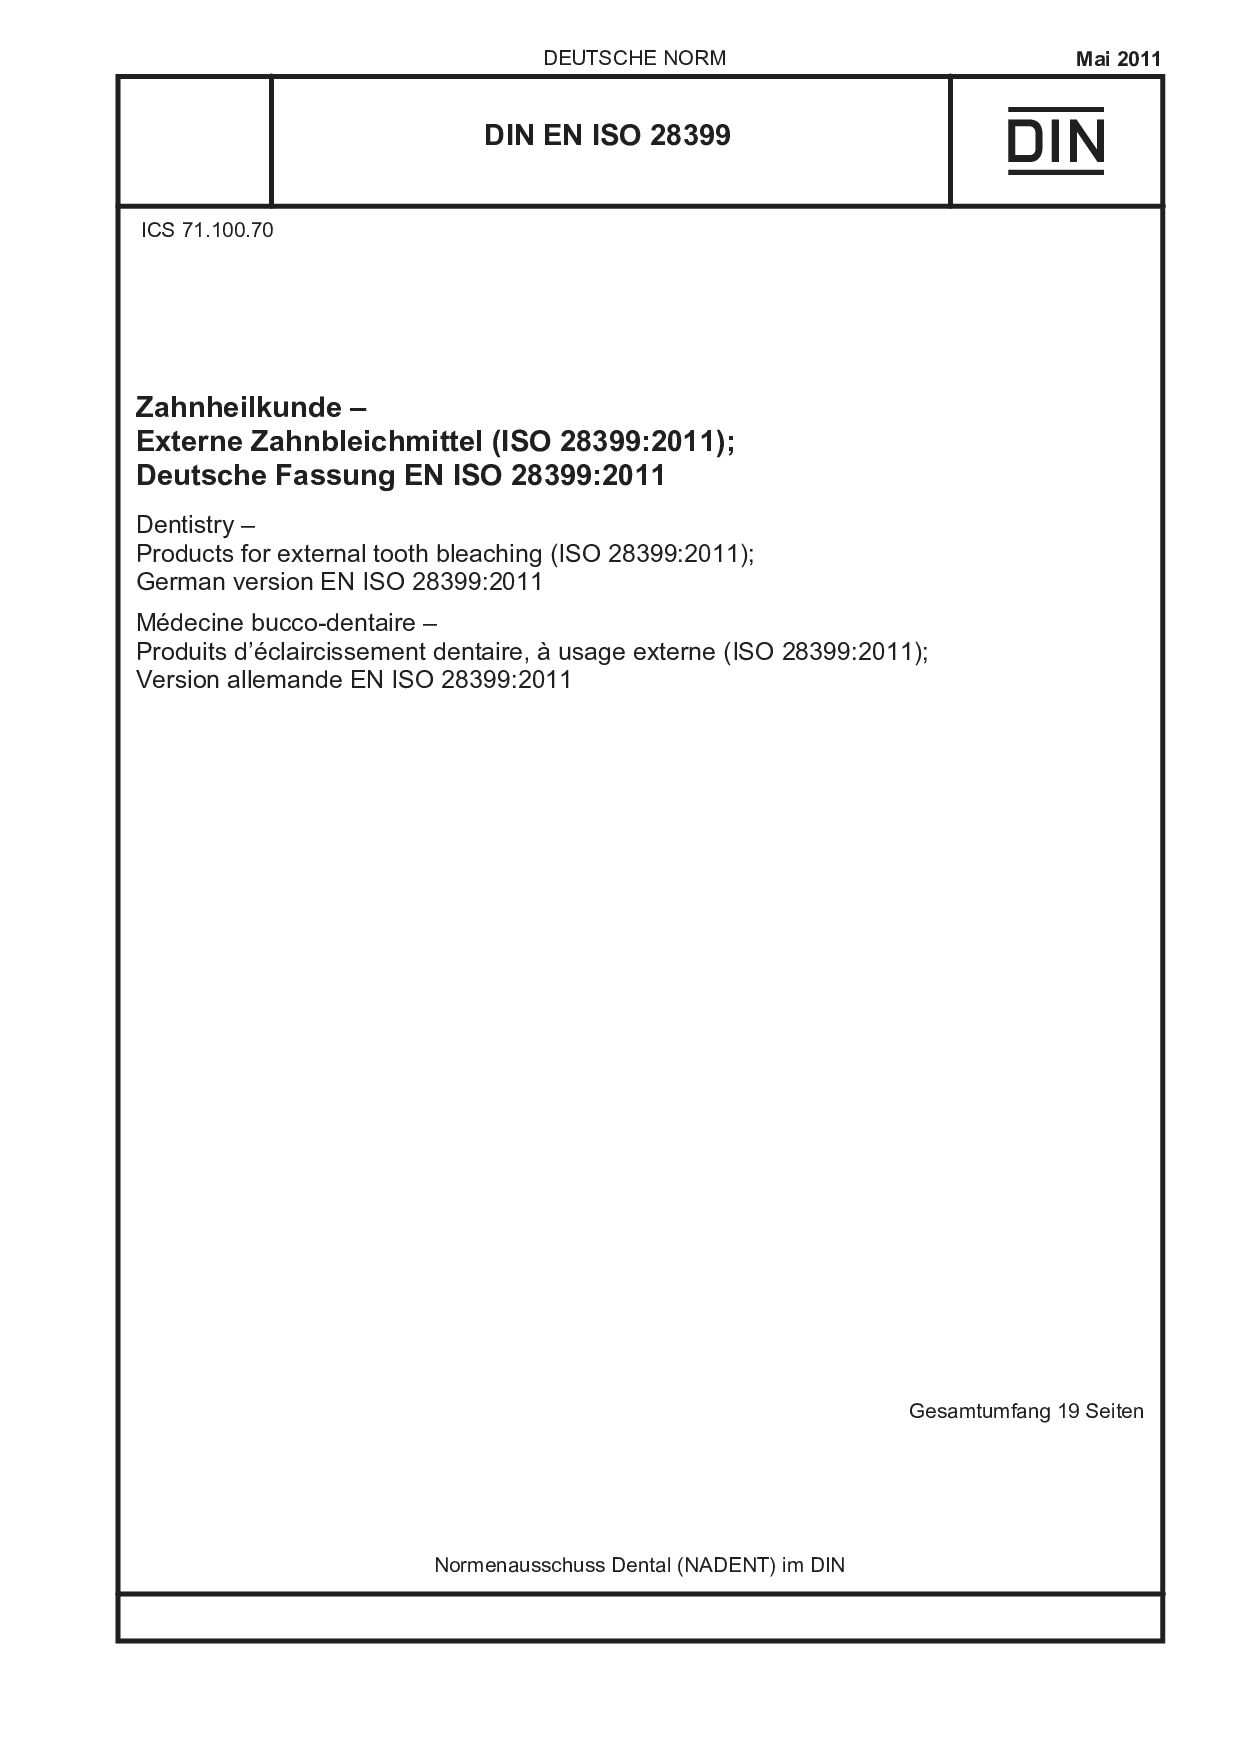 DIN EN ISO 28399:2011封面图